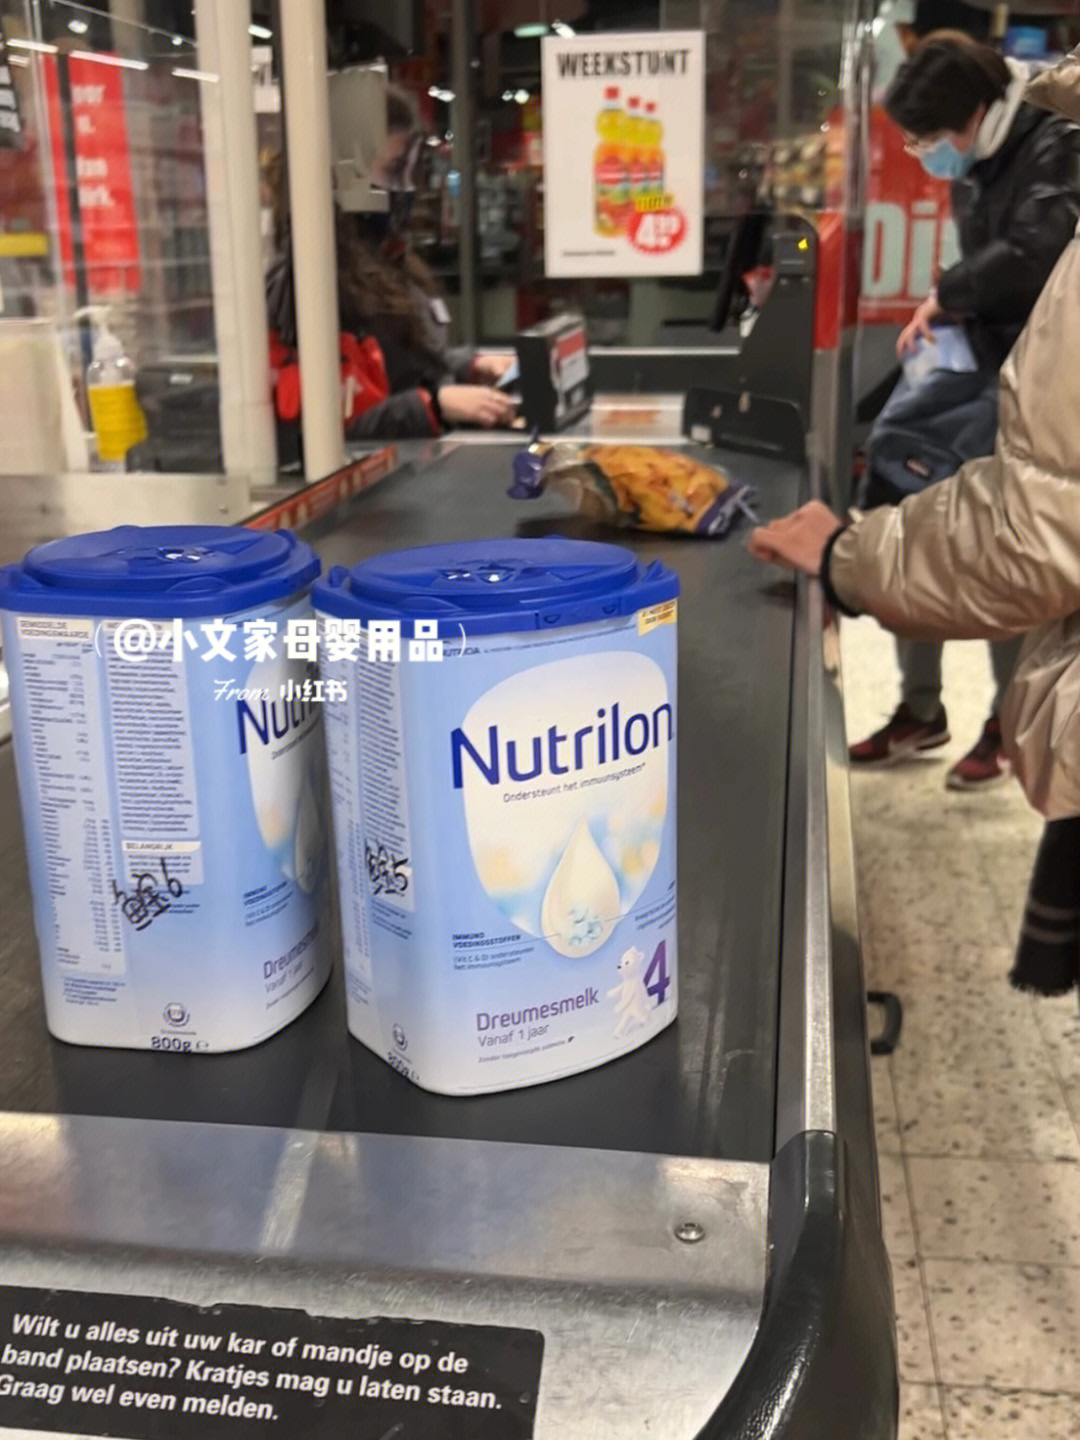 香港牛栏牌奶粉事件图片